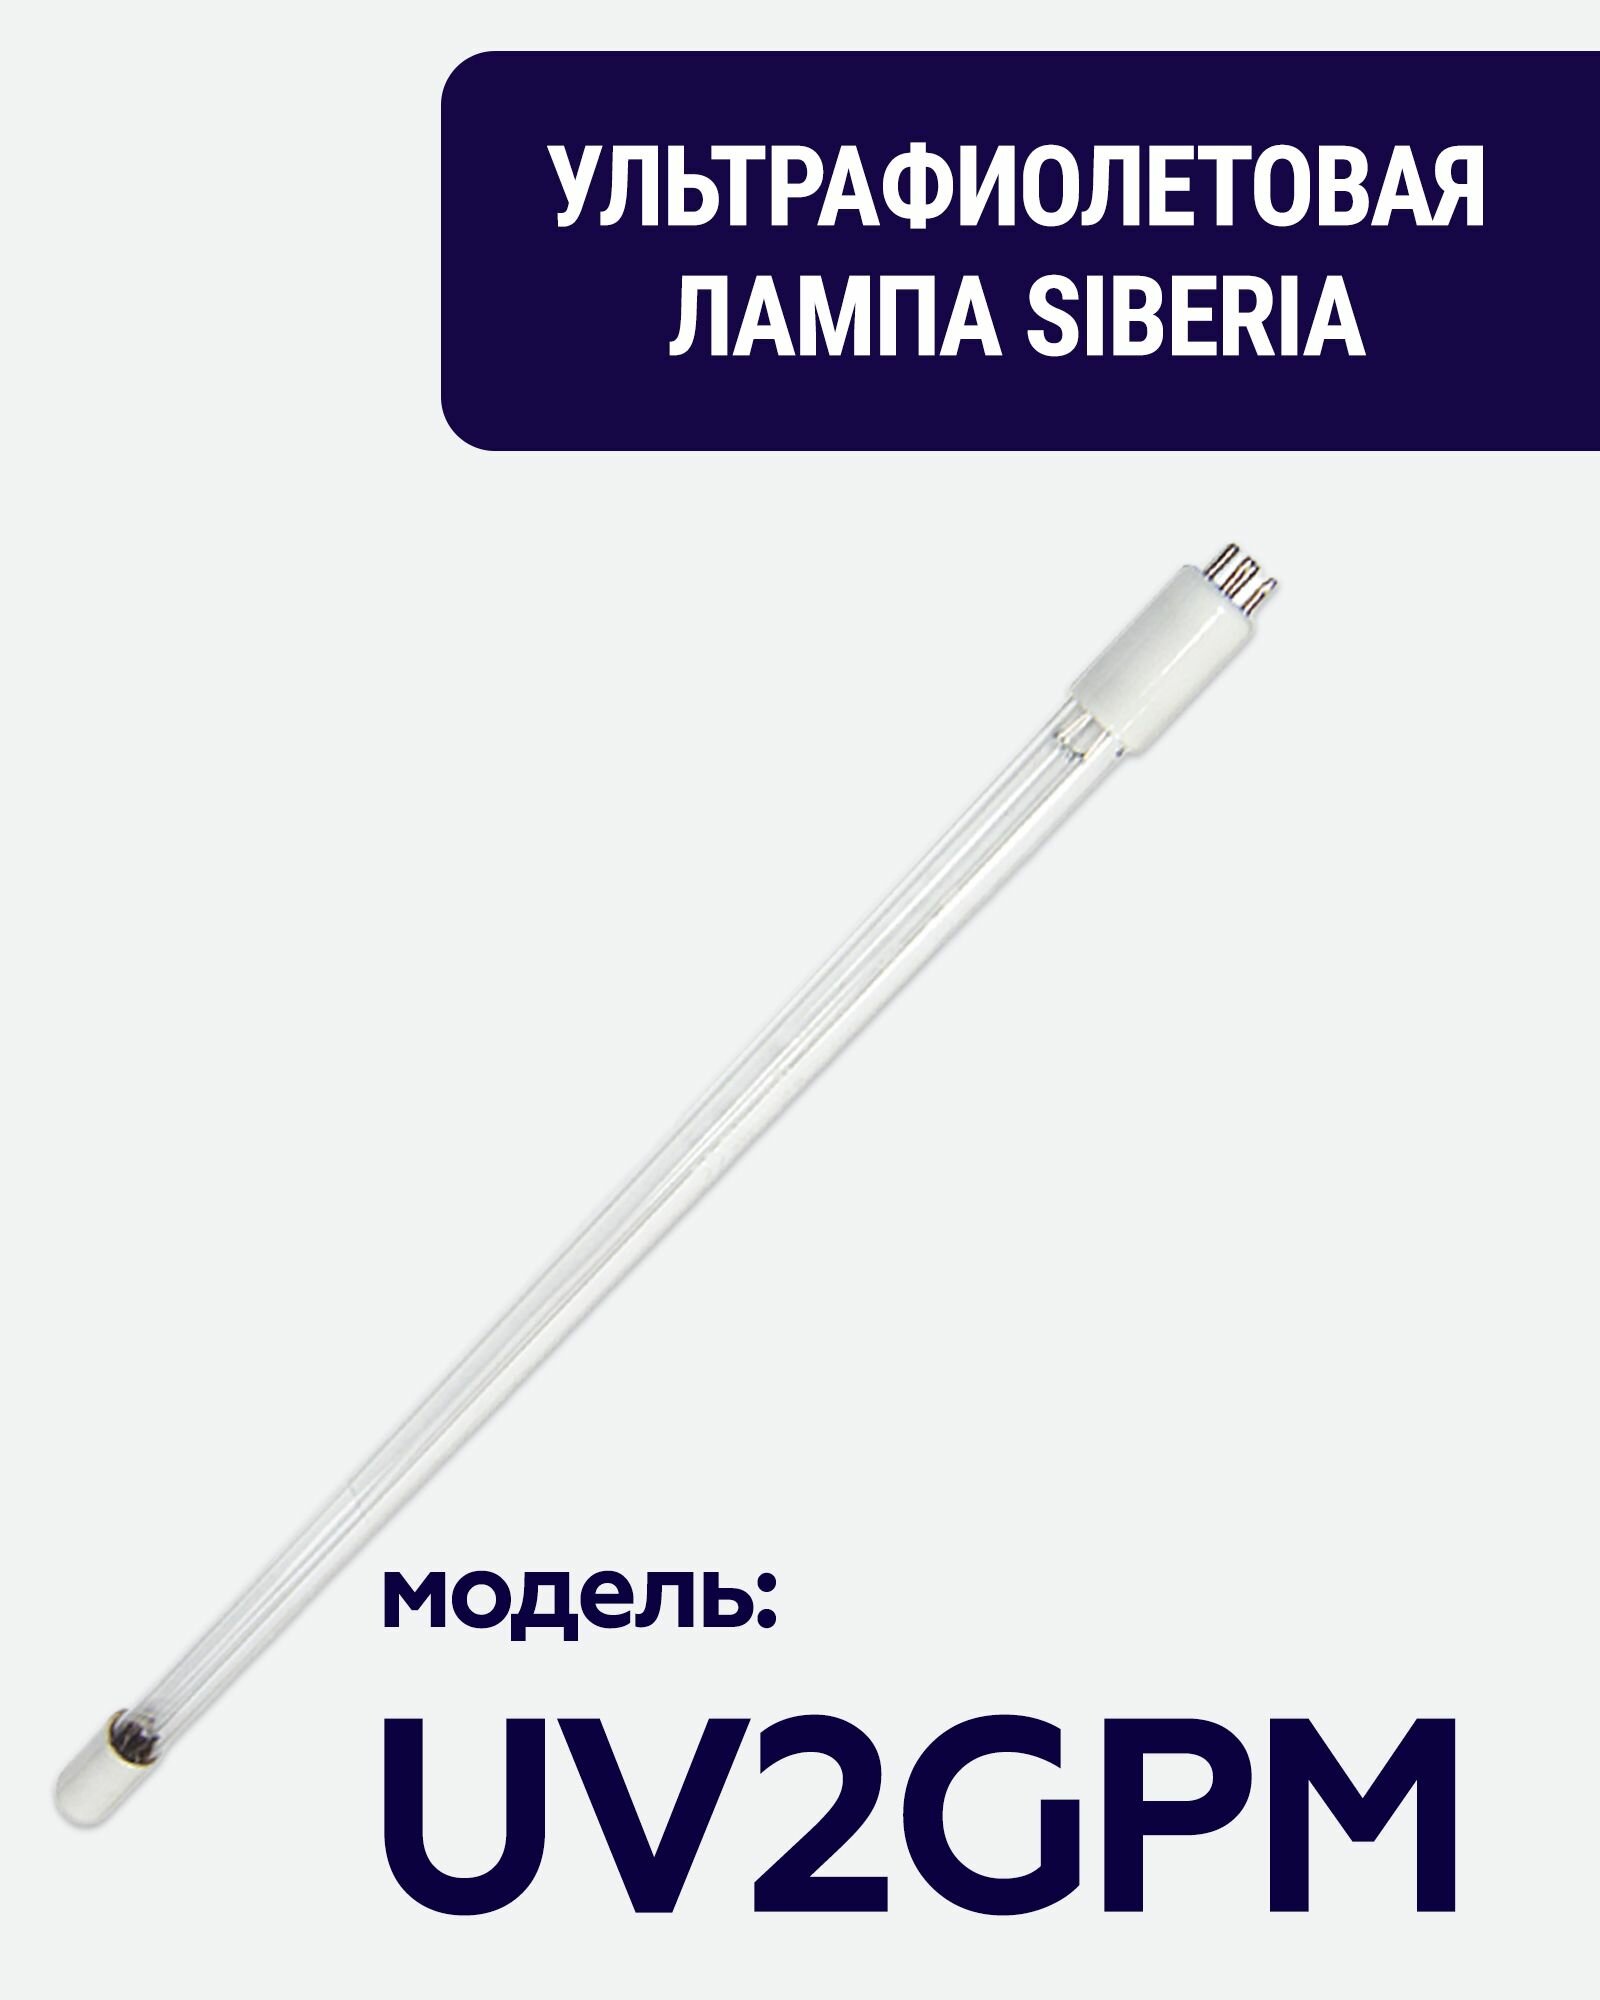 Ультрафиолетовая лампа Siberia 2 GPM, 14W